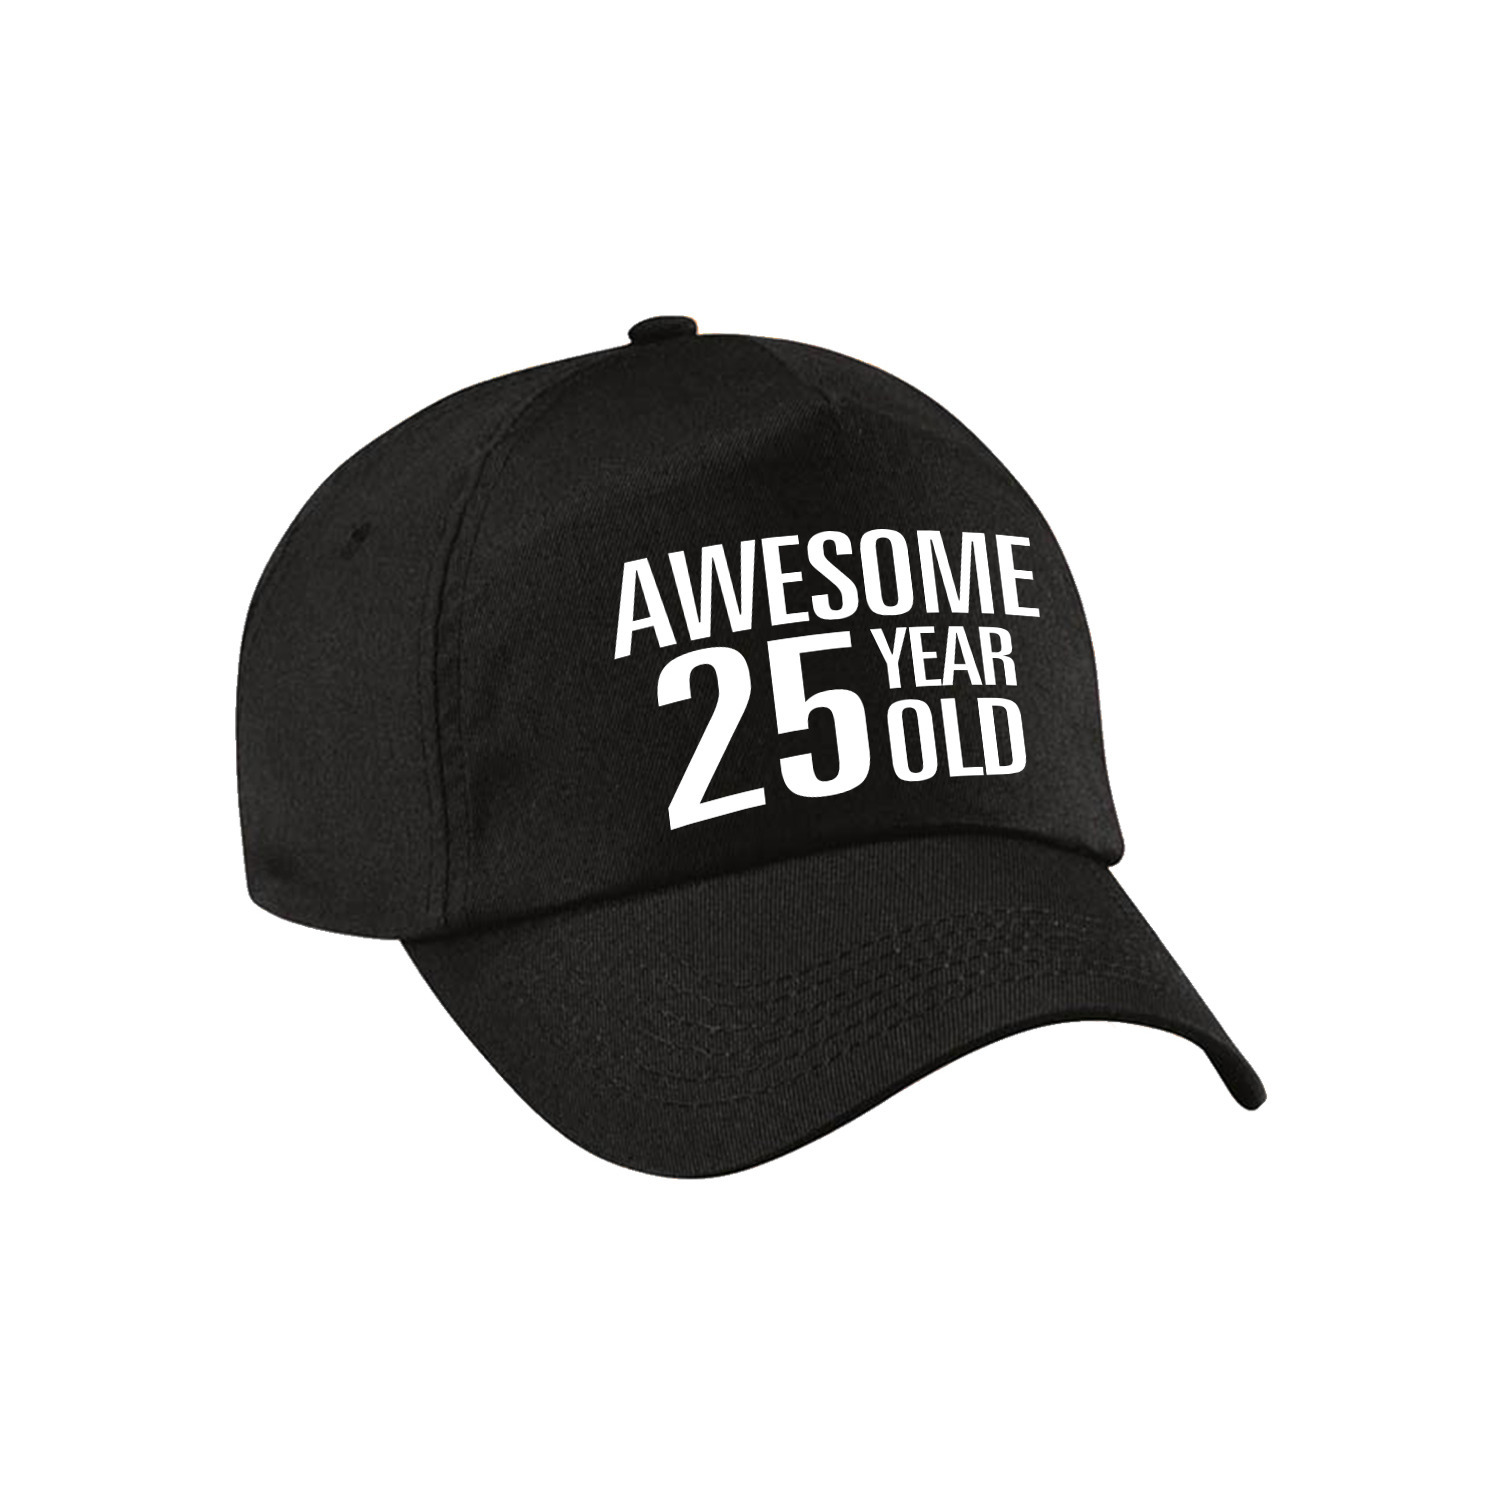 Awesome 25 year old verjaardag pet-cap zwart voor dames en heren